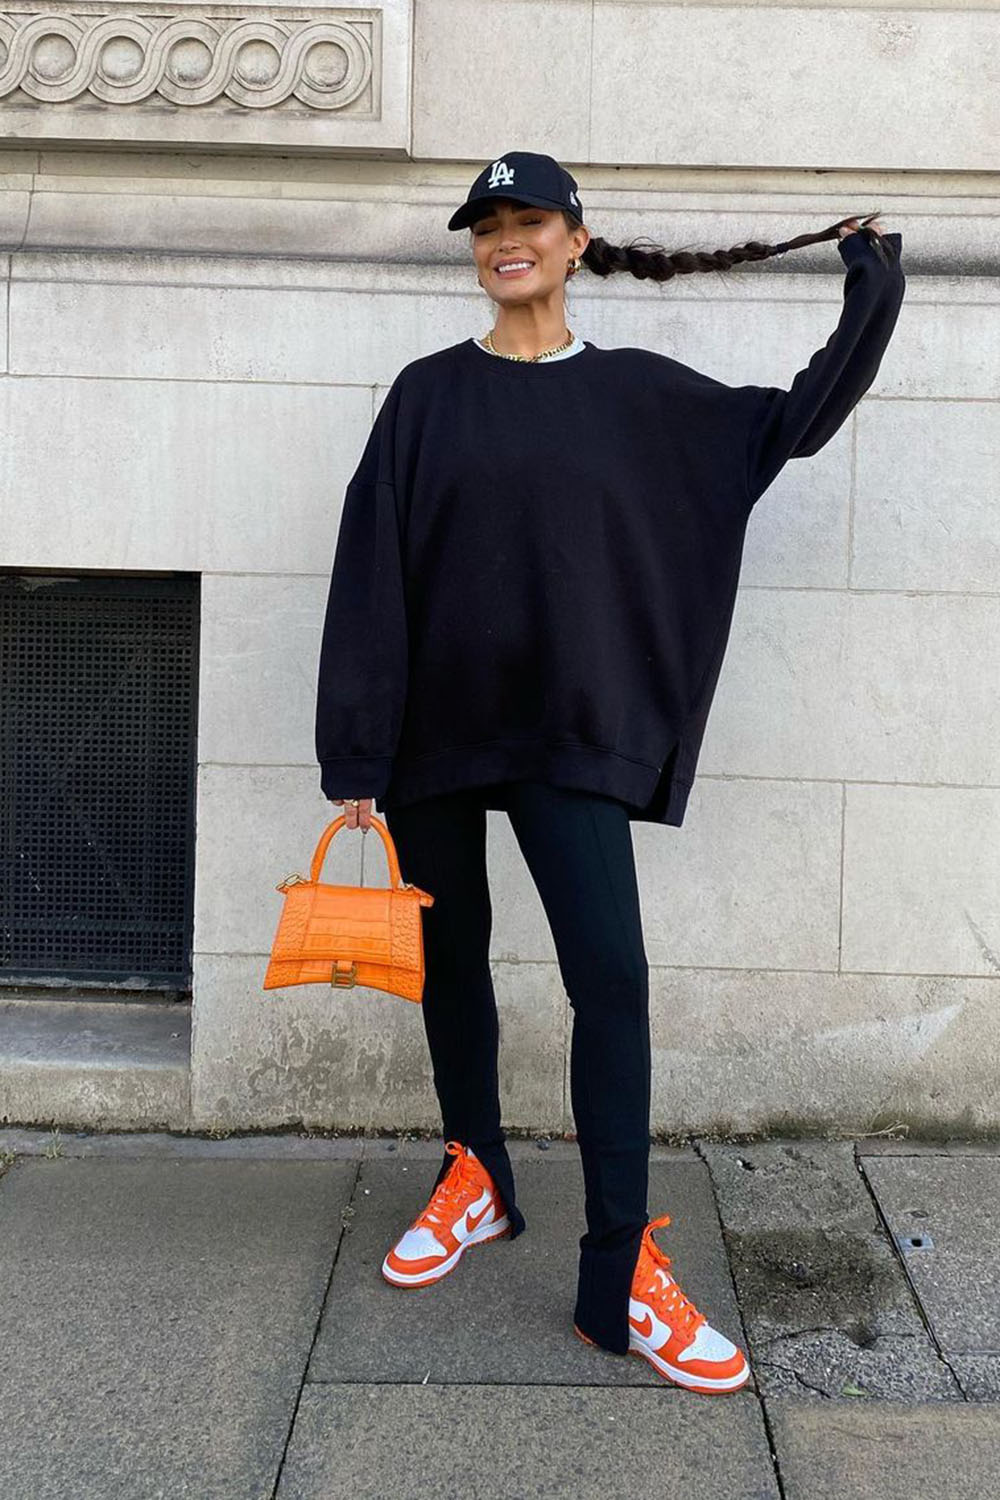 boné no look all black com moletom oversized, calça preta flire, tênis e bolsa laranja